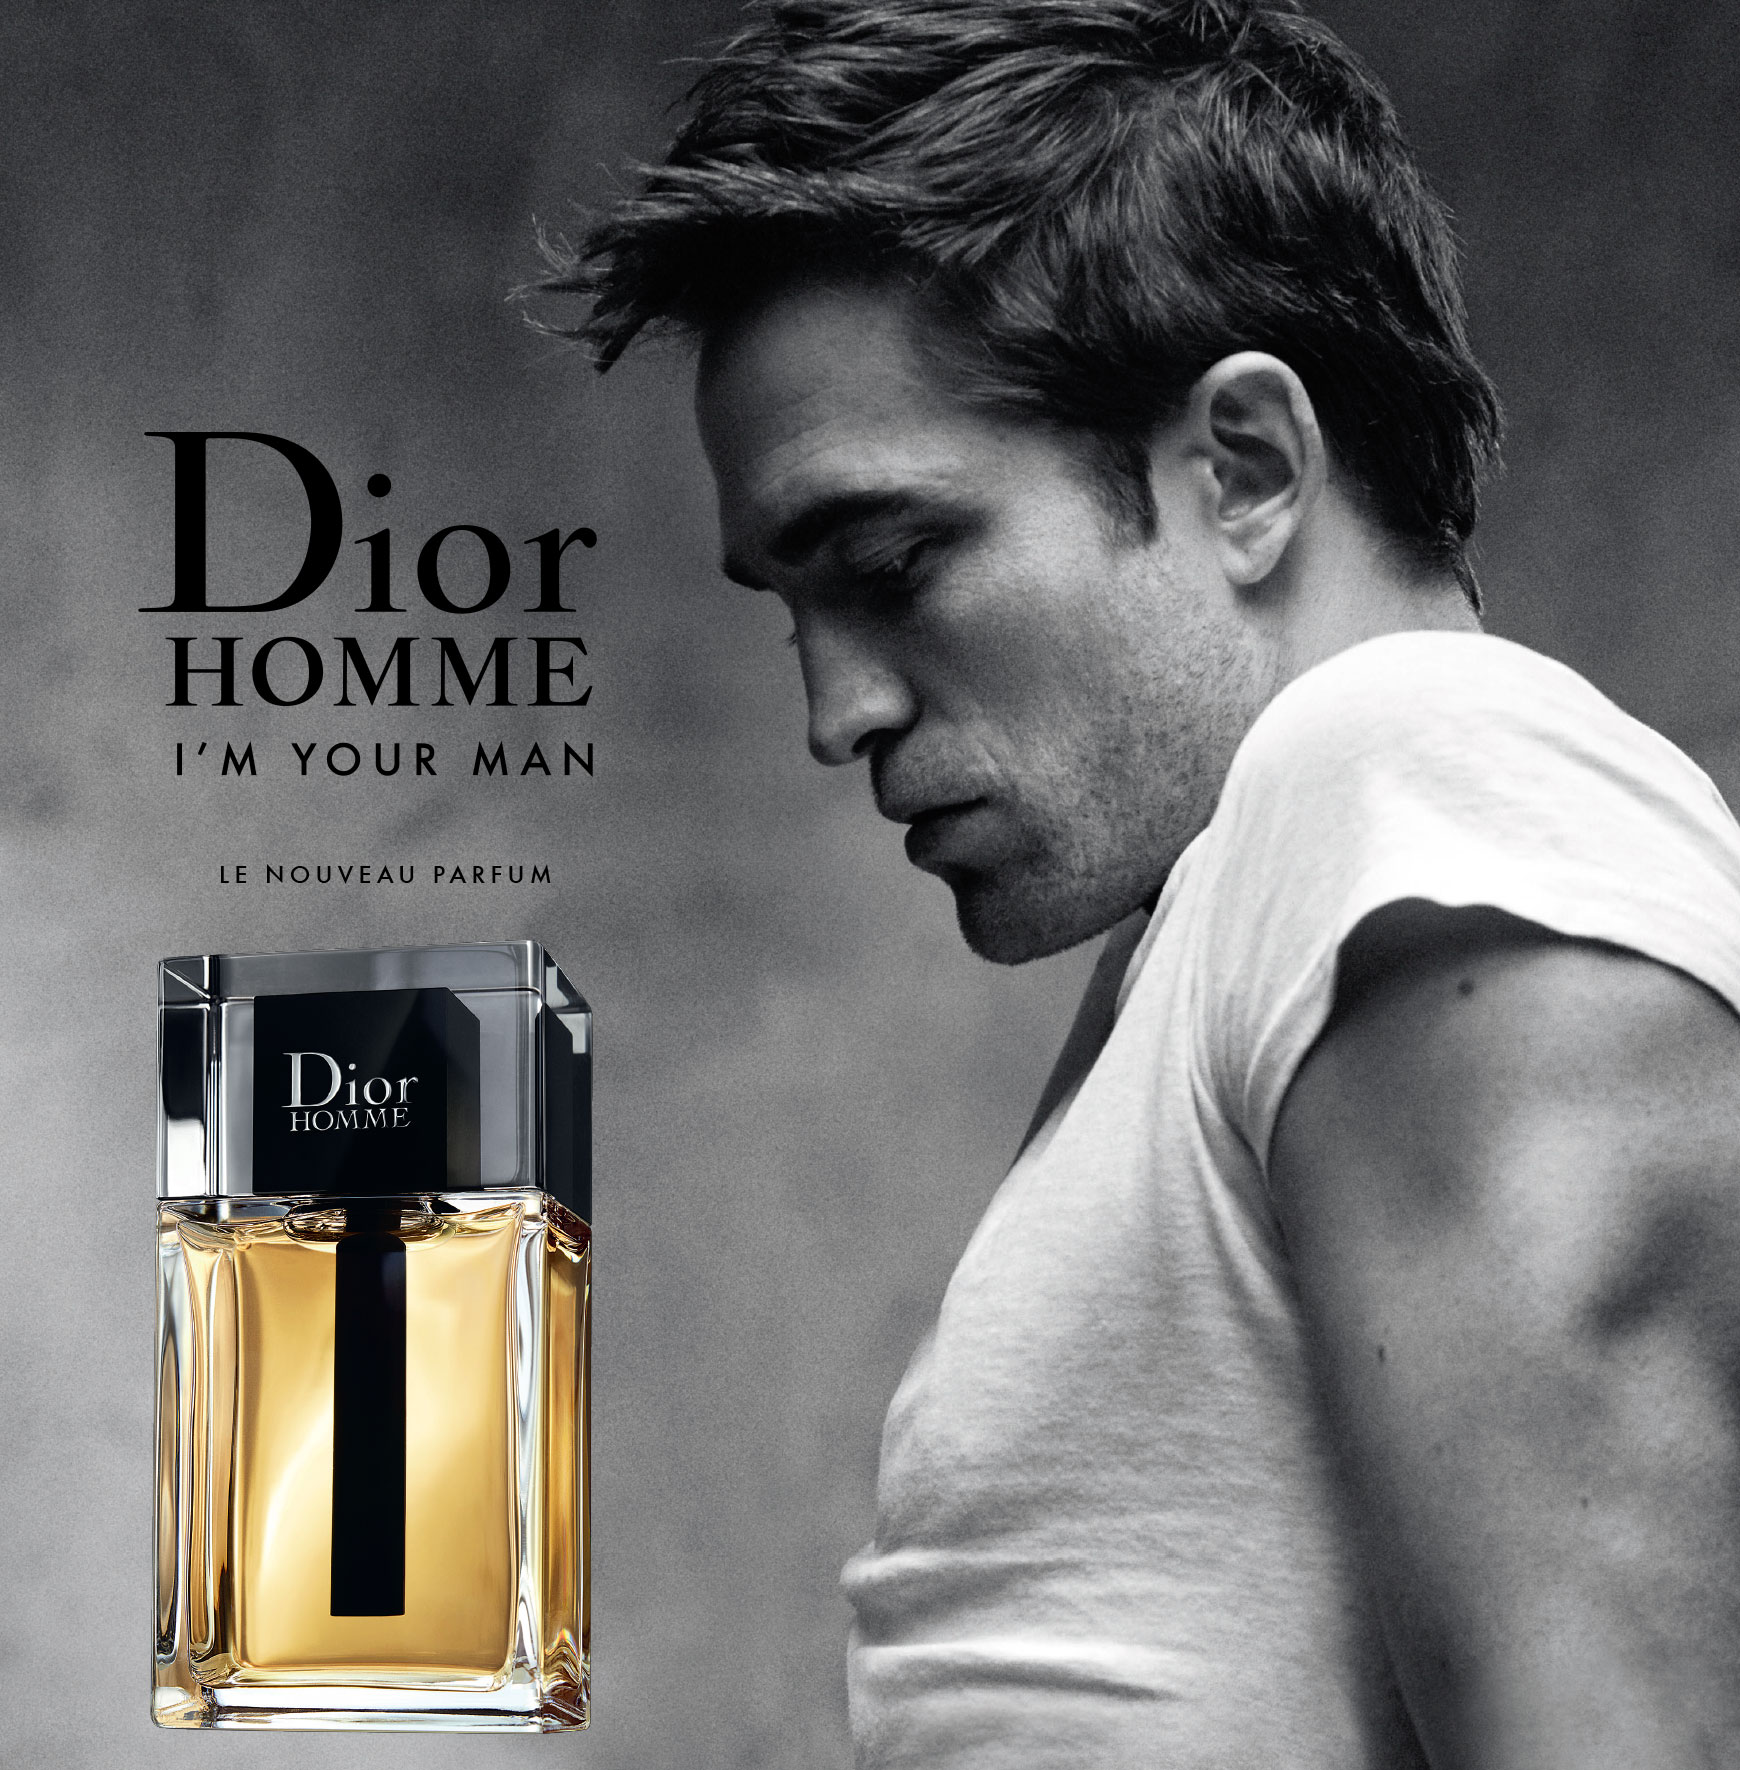 Dior Homme (2020) Christian Dior Cologne ein neues Parfum für Männer 2020